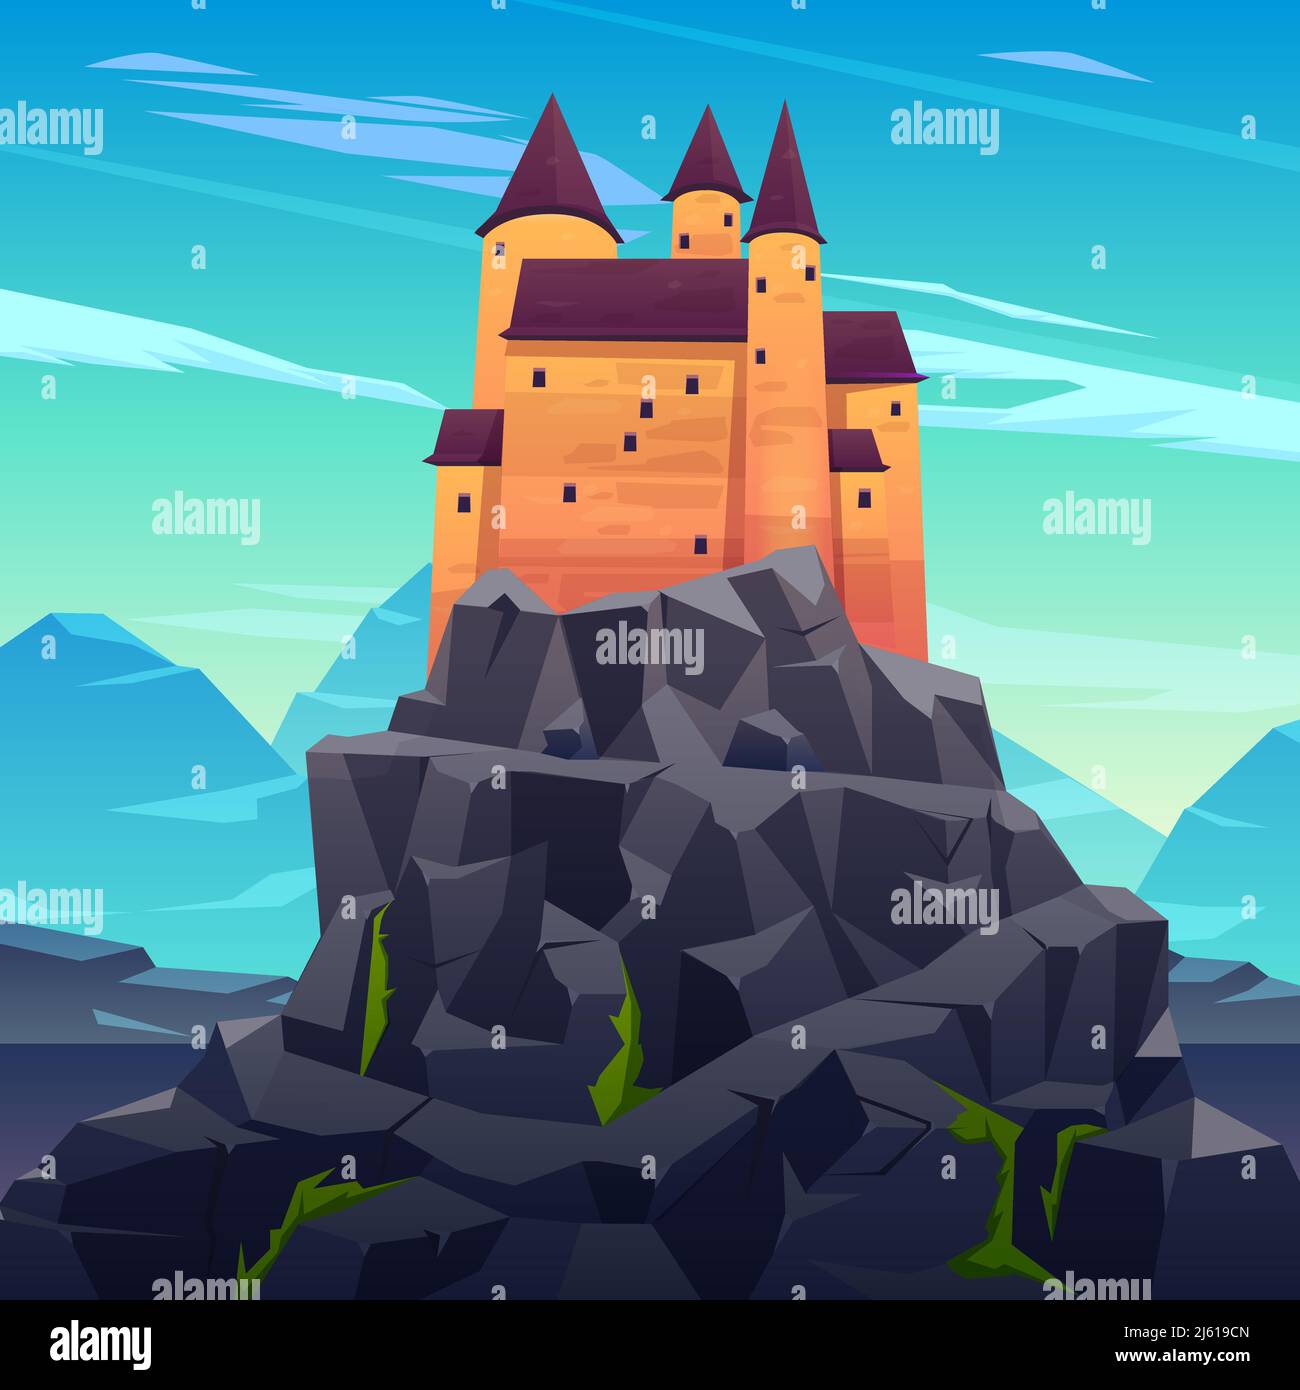 Mittelalterliche Burg, alte Zitadelle oder uneinnehmbare Festung mit Steintürmen auf felsigen Spitze Cartoon-Vektor. Märchenkönigspalast, königliche Festung, drac Stock Vektor